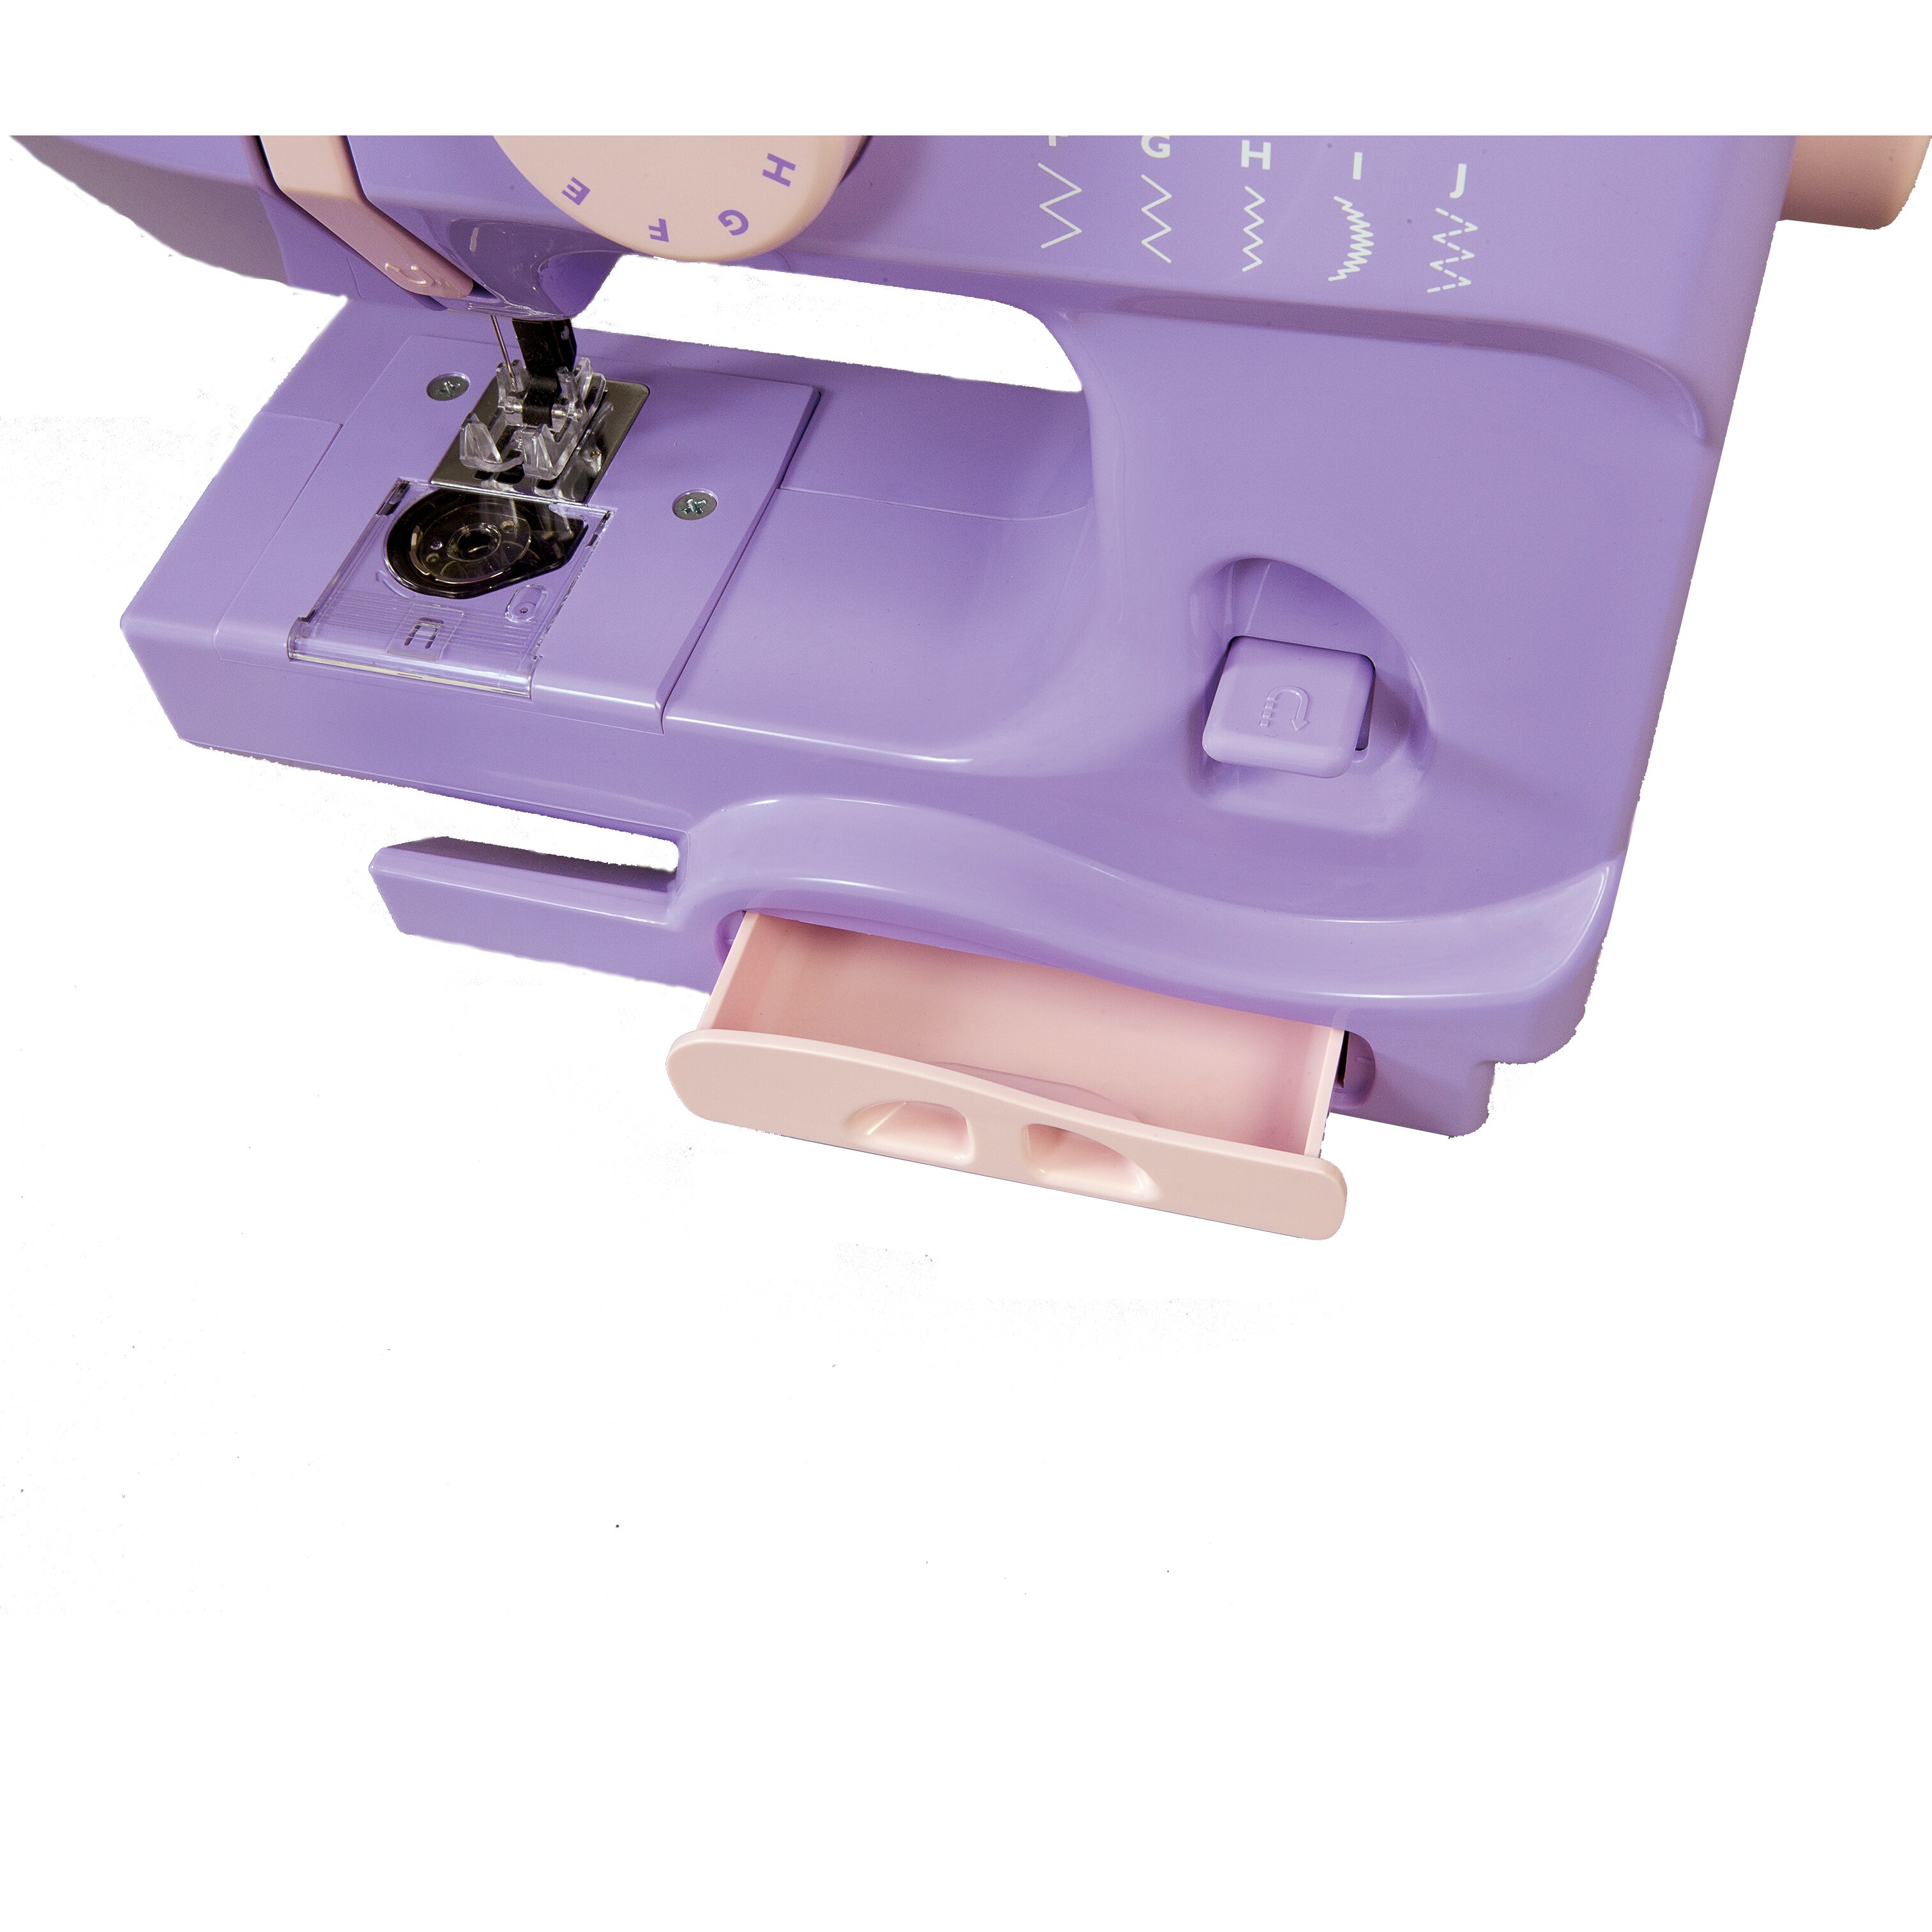 Janome Purple Majesty Sewing Machine